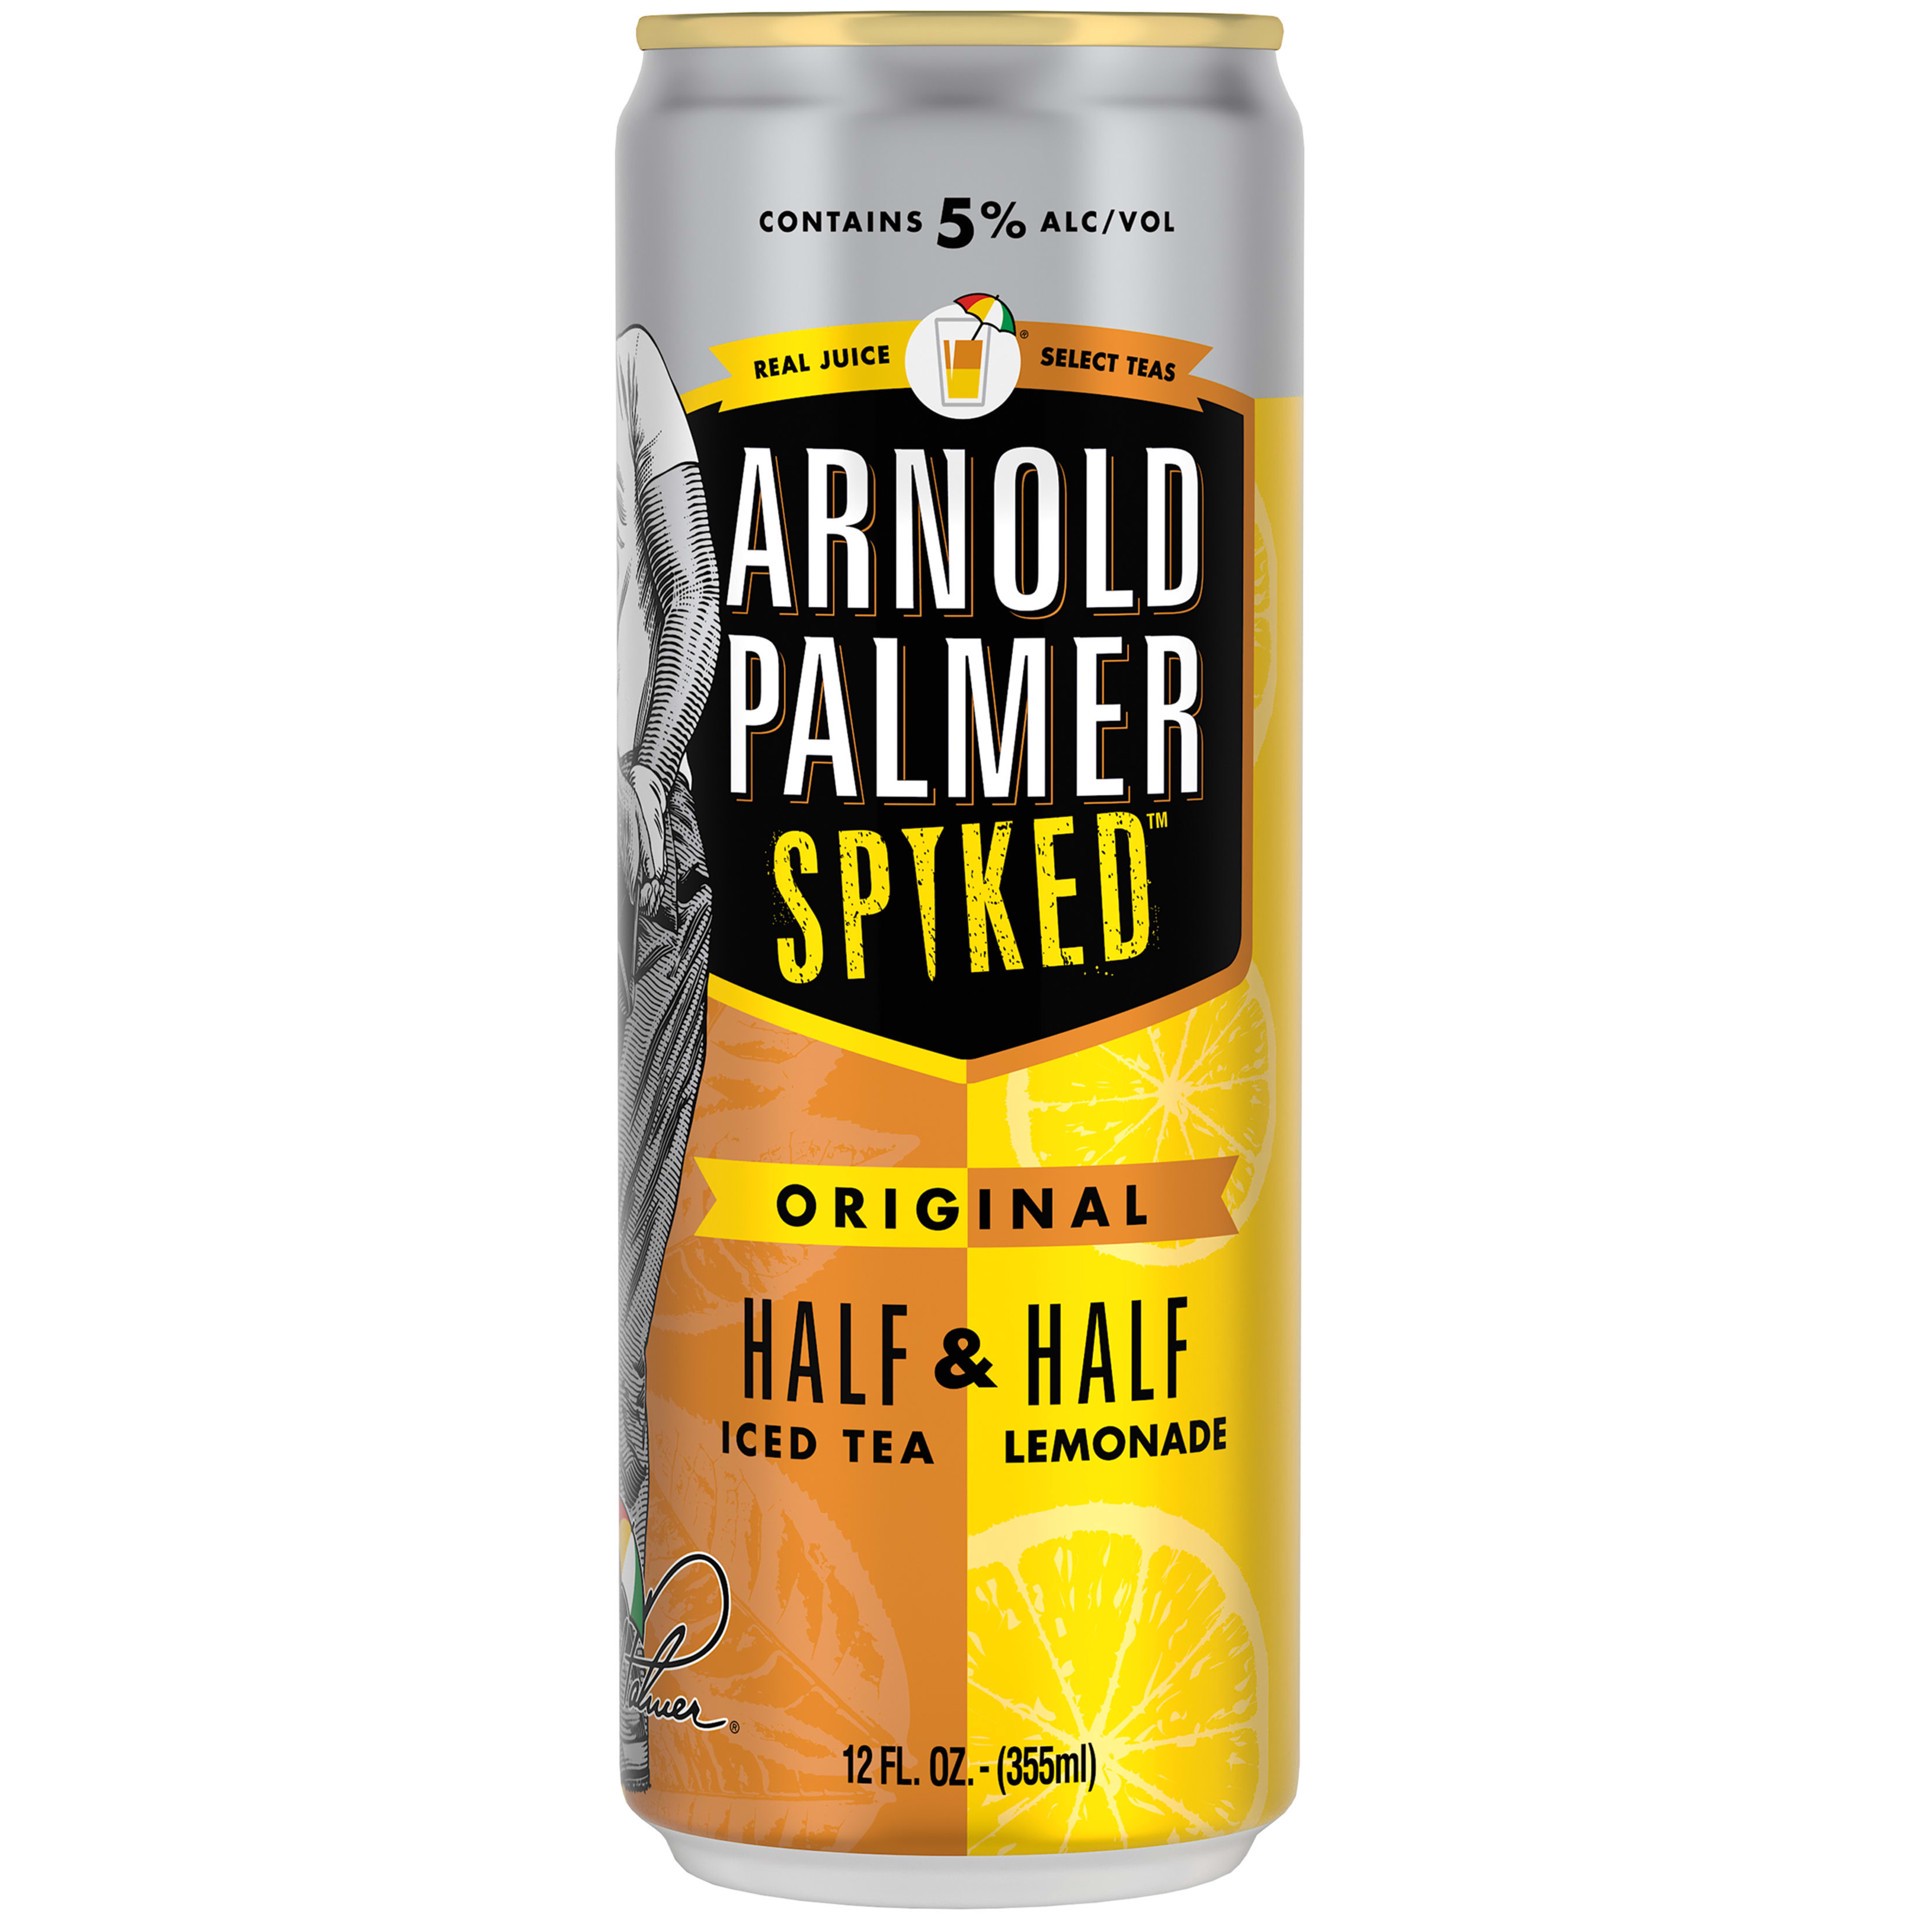 slide 2 of 5, Arnold Palmer Spiked Half & Half Original Arnold Palmer Spiked Original Half & Half Iced Tea Lemonade, 12 Pack, 12 fl oz Cans, 5% ABV, 144 fl oz